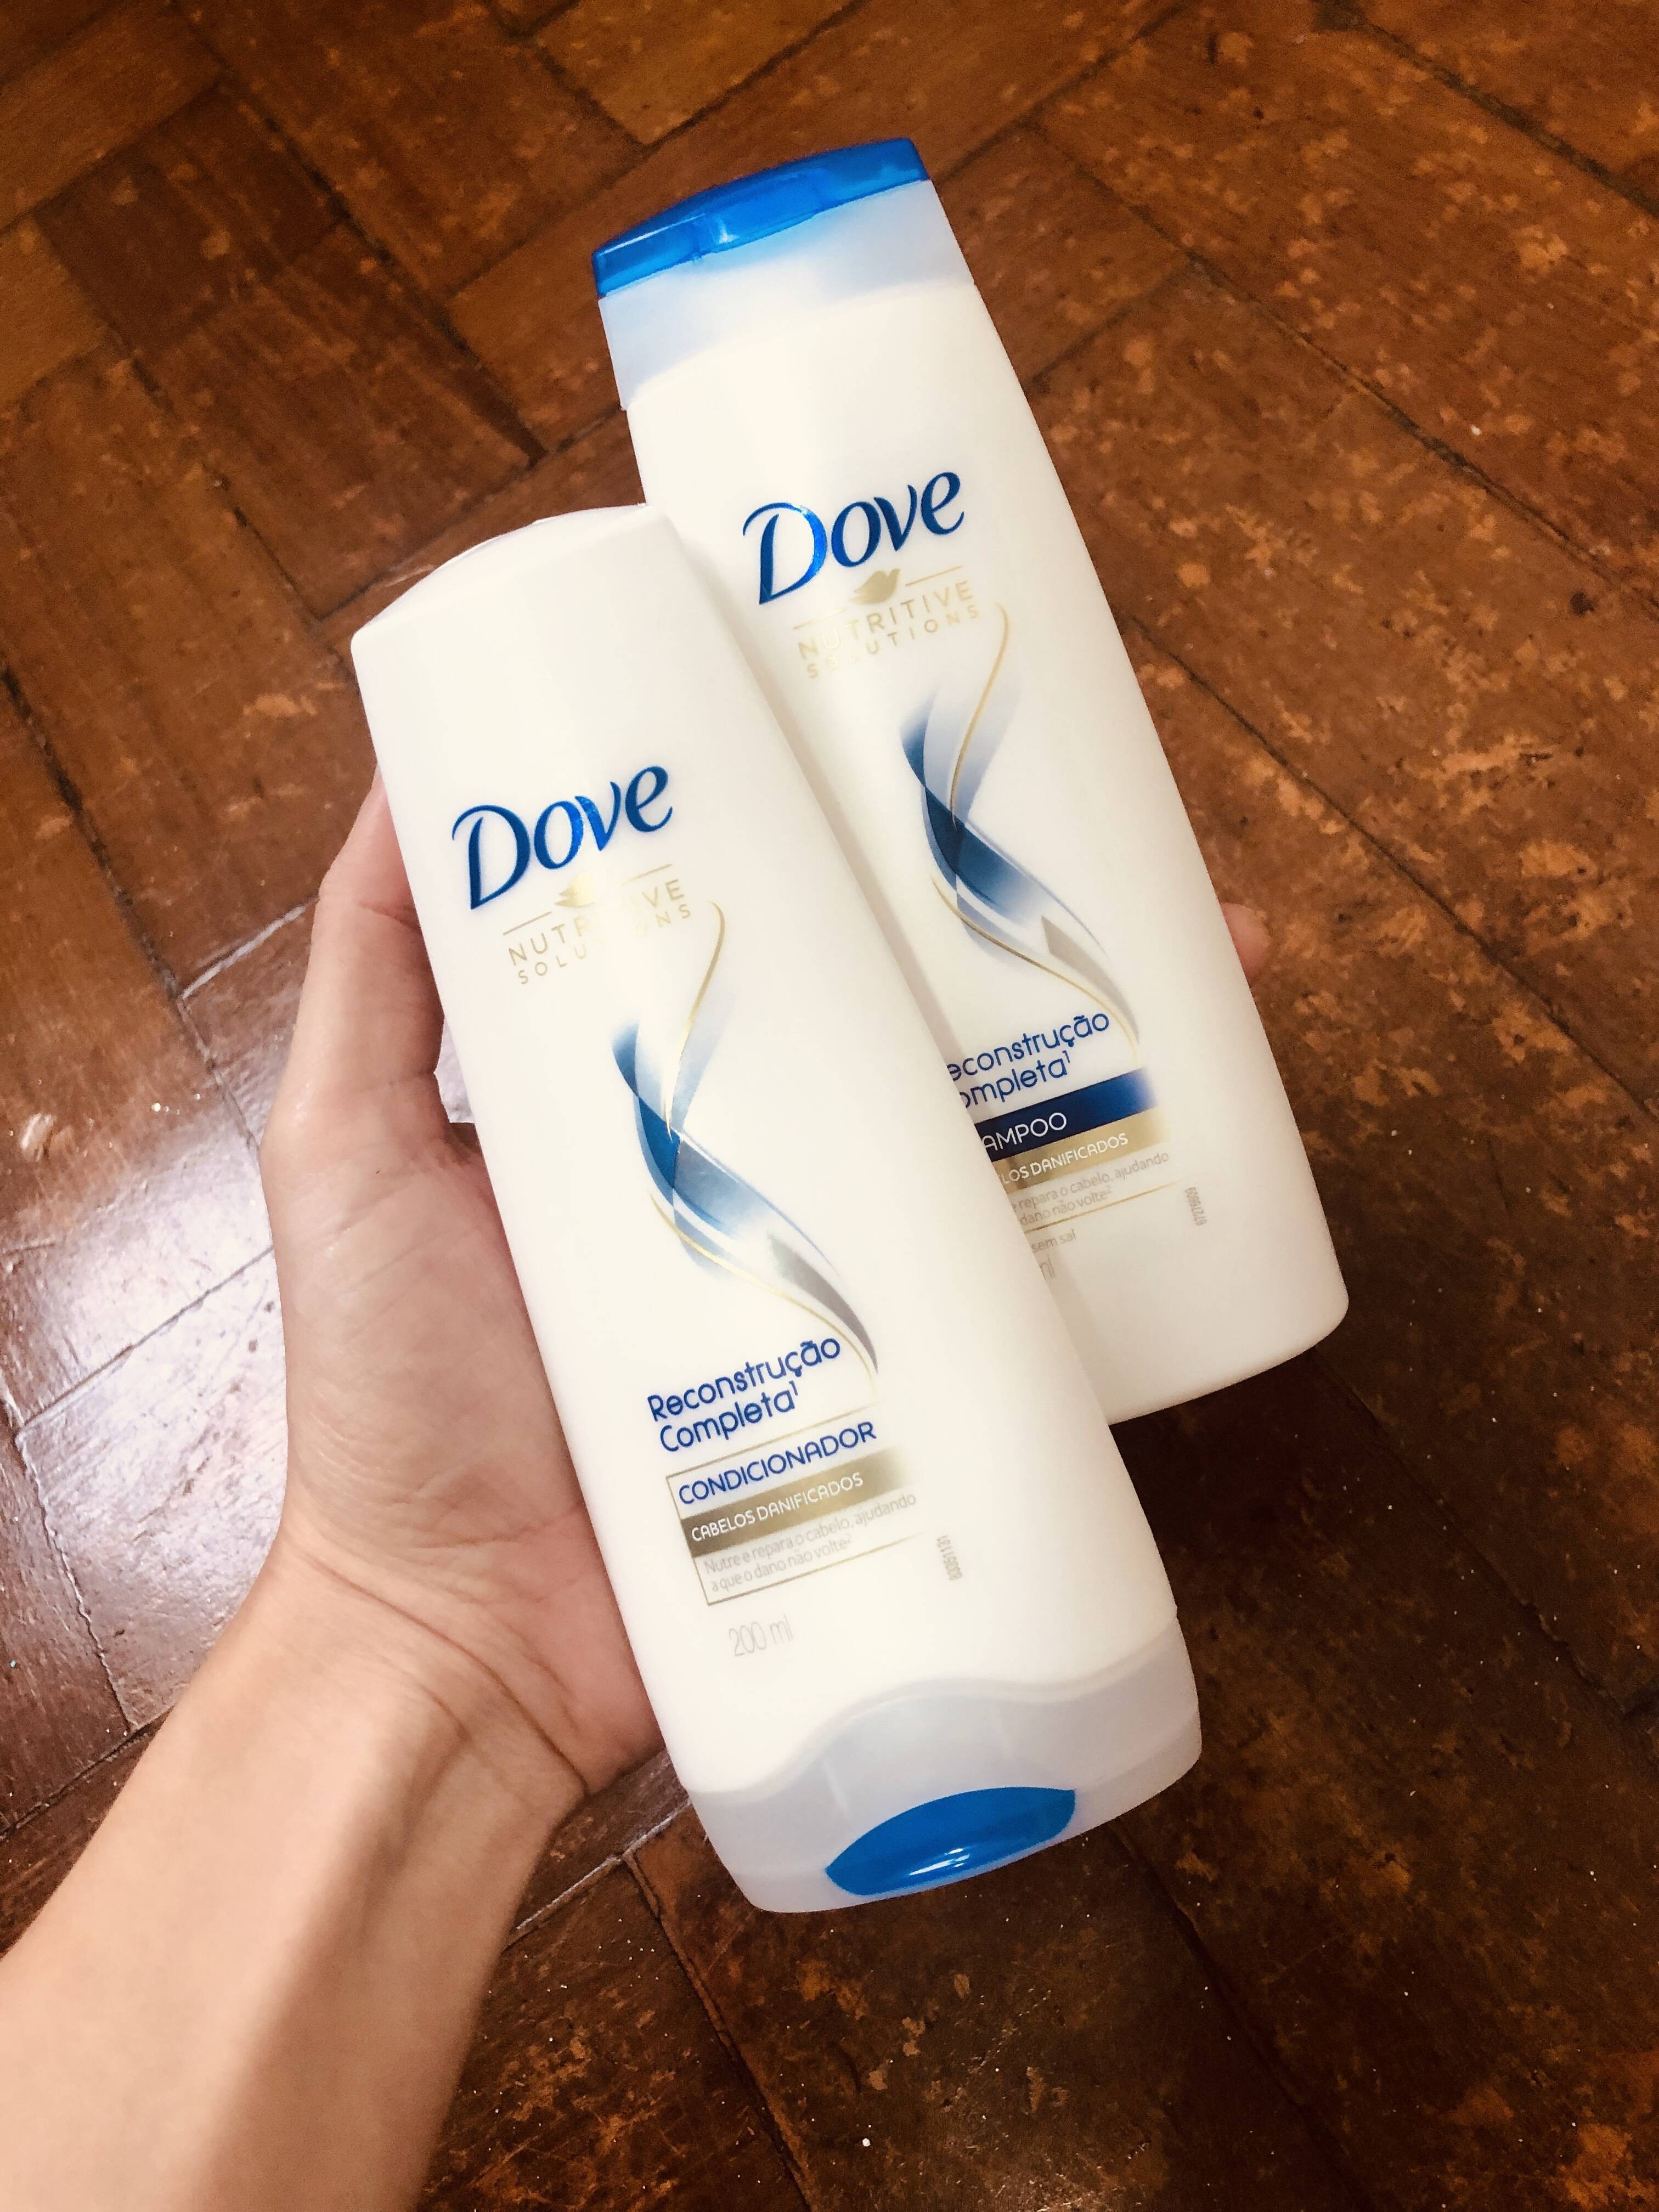 Shampoo e Condicionador Reconstrução Completa, Dove (Foto: Acervo Pessoal)